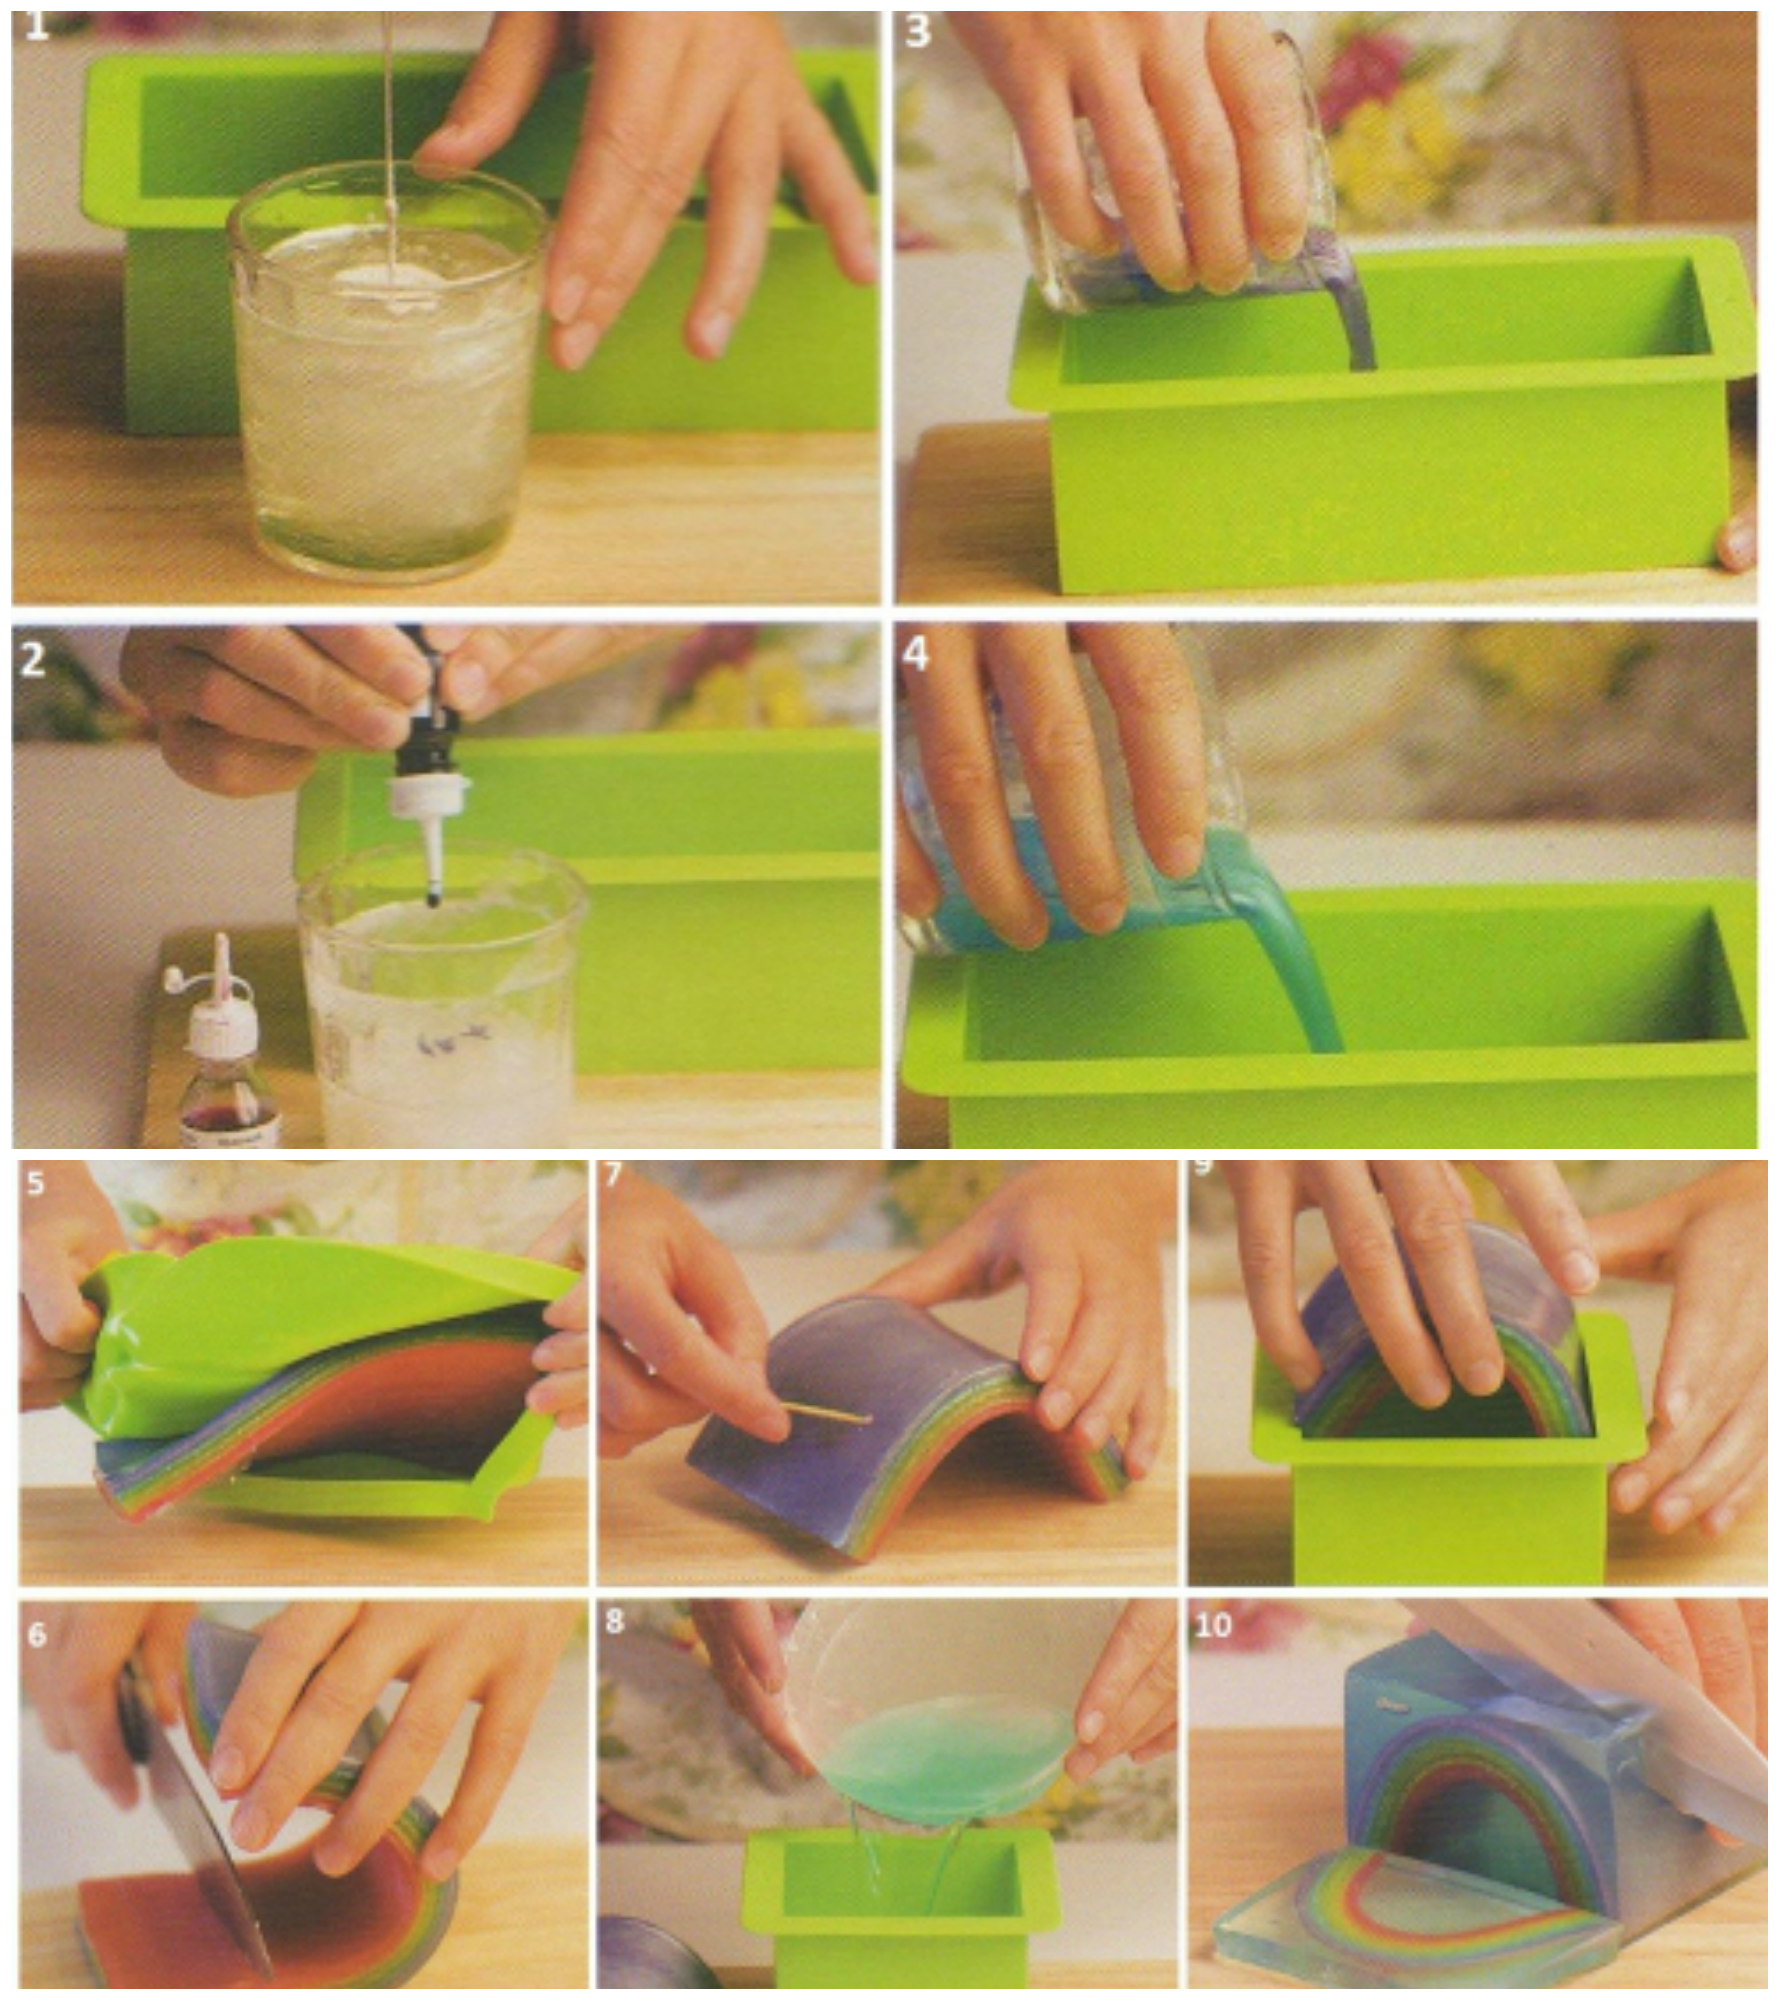 Kак сделать мыло своими руками в домашних условиях для начинающих - пошаговая инструкция с фото